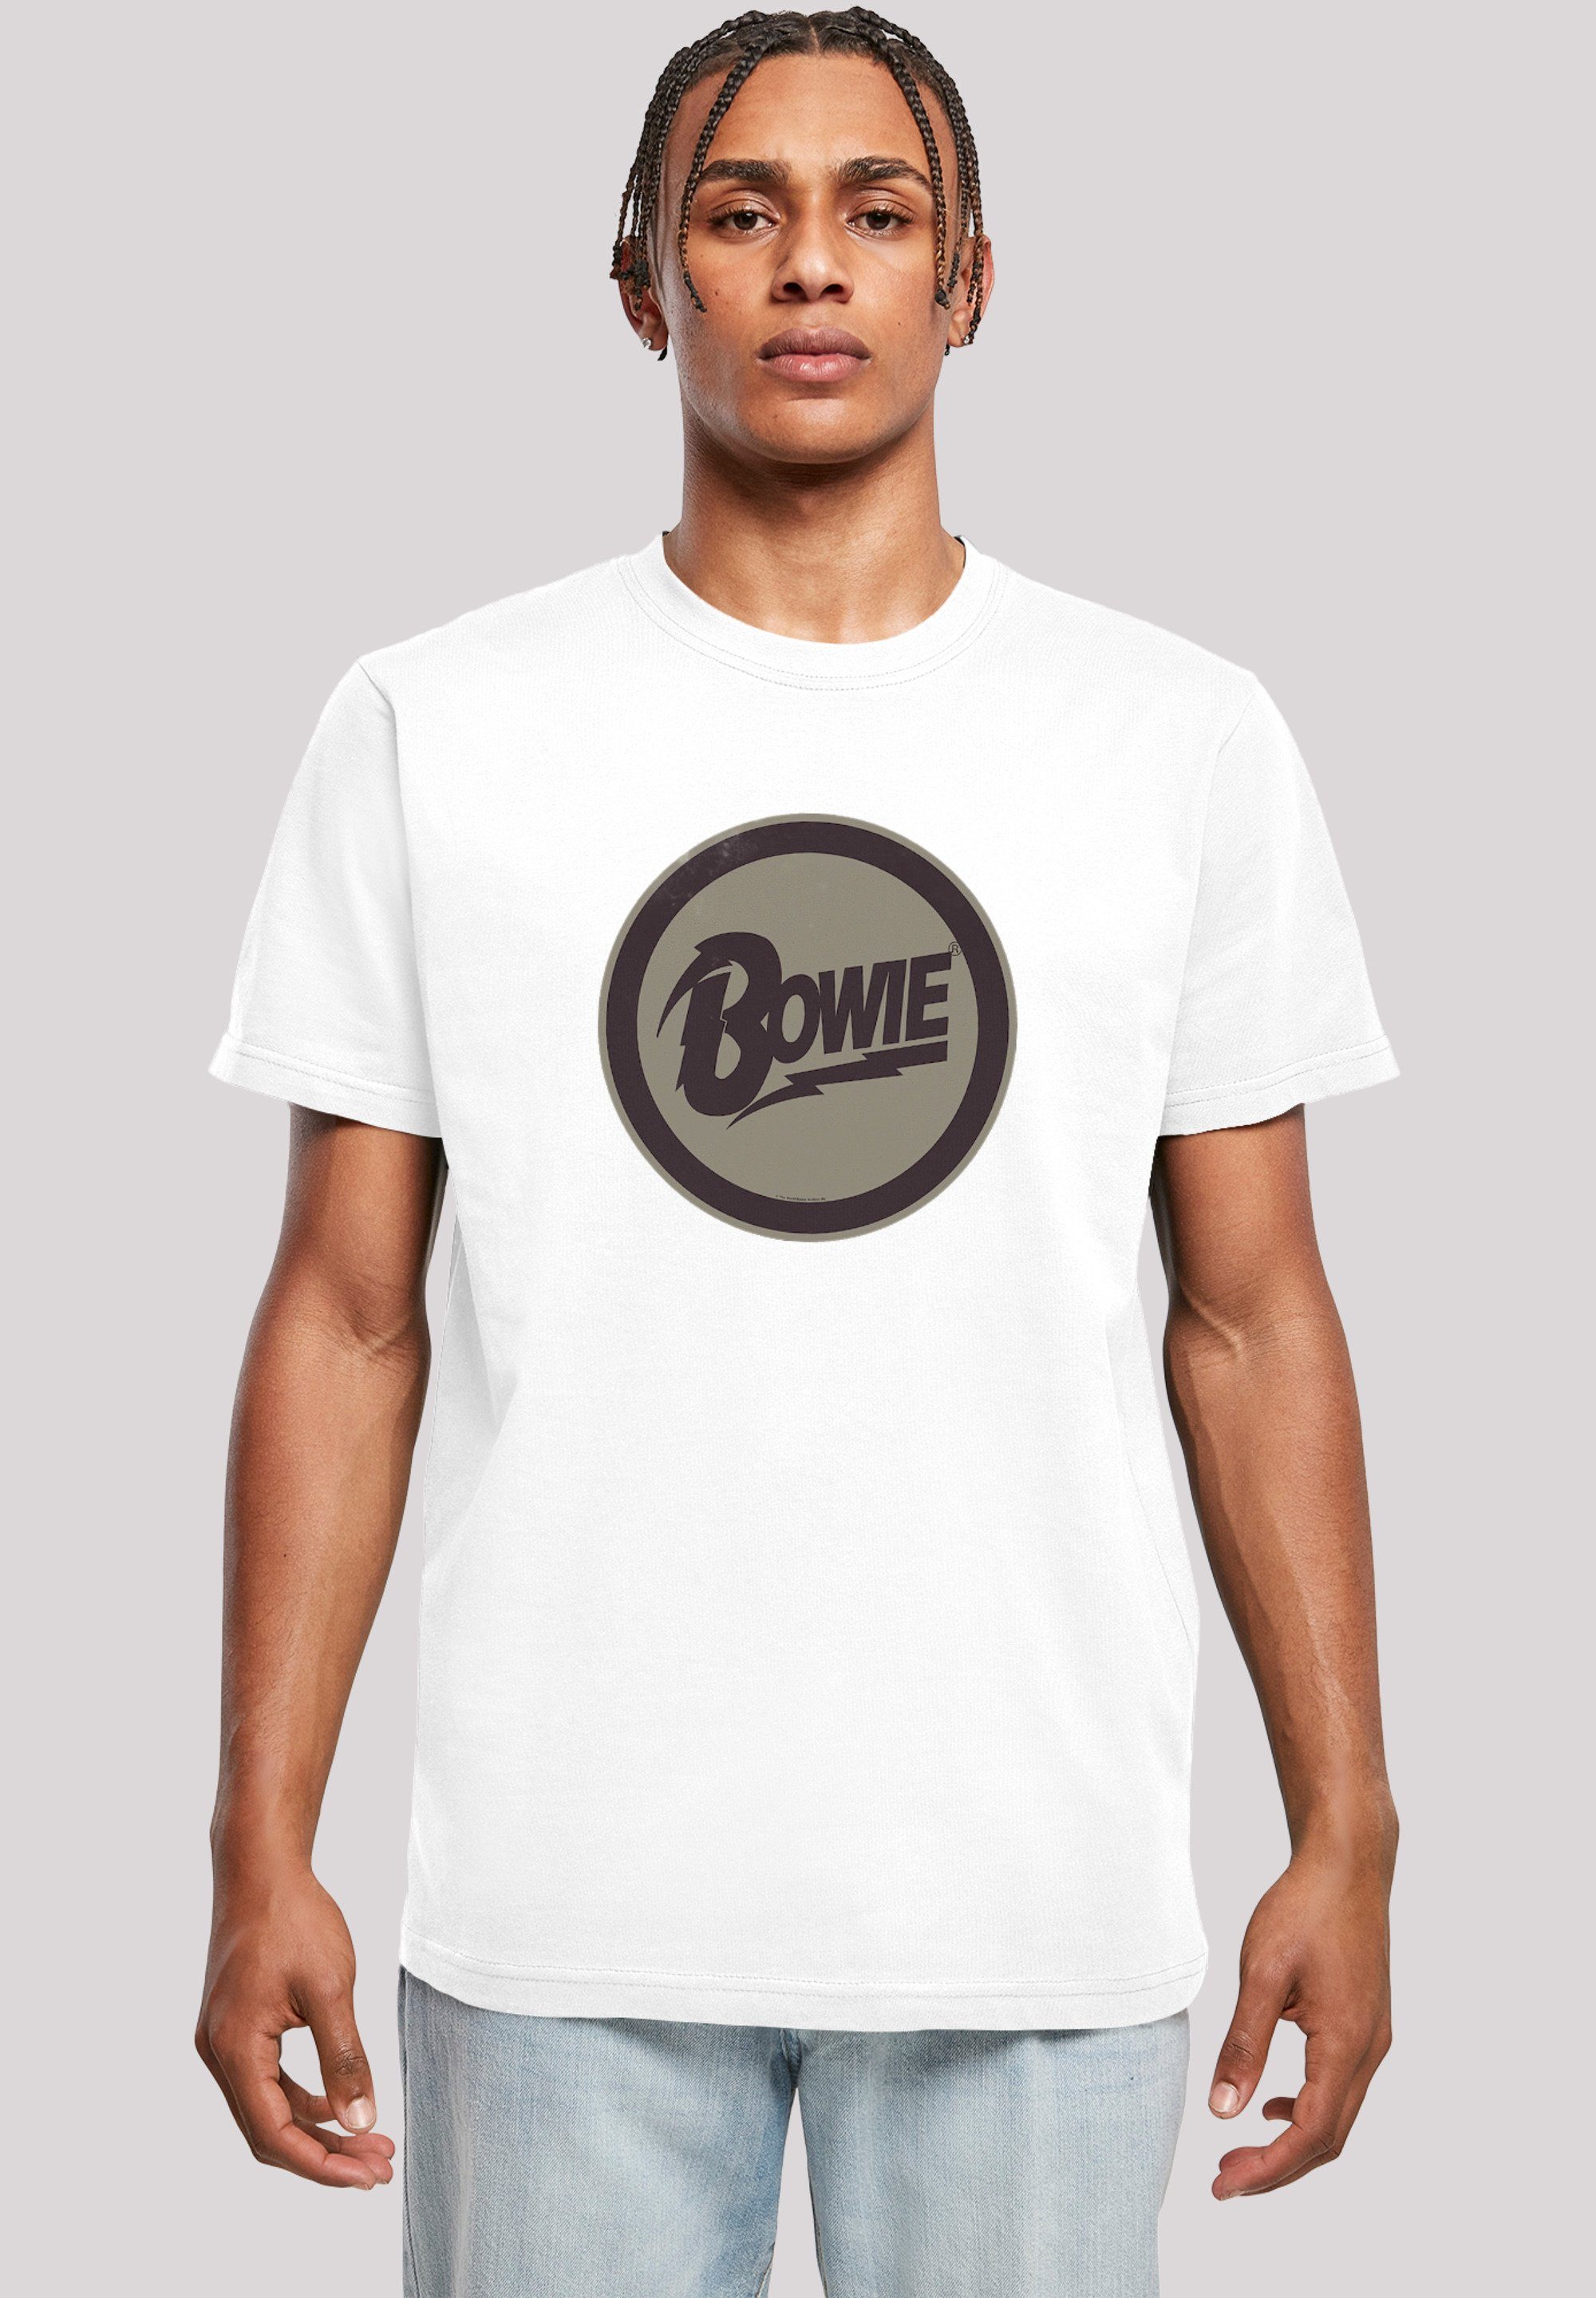 David Herren,Premium Logo F4NT4STIC T-Shirt weiß Merch,Regular-Fit,Basic,Bandshirt Bowie